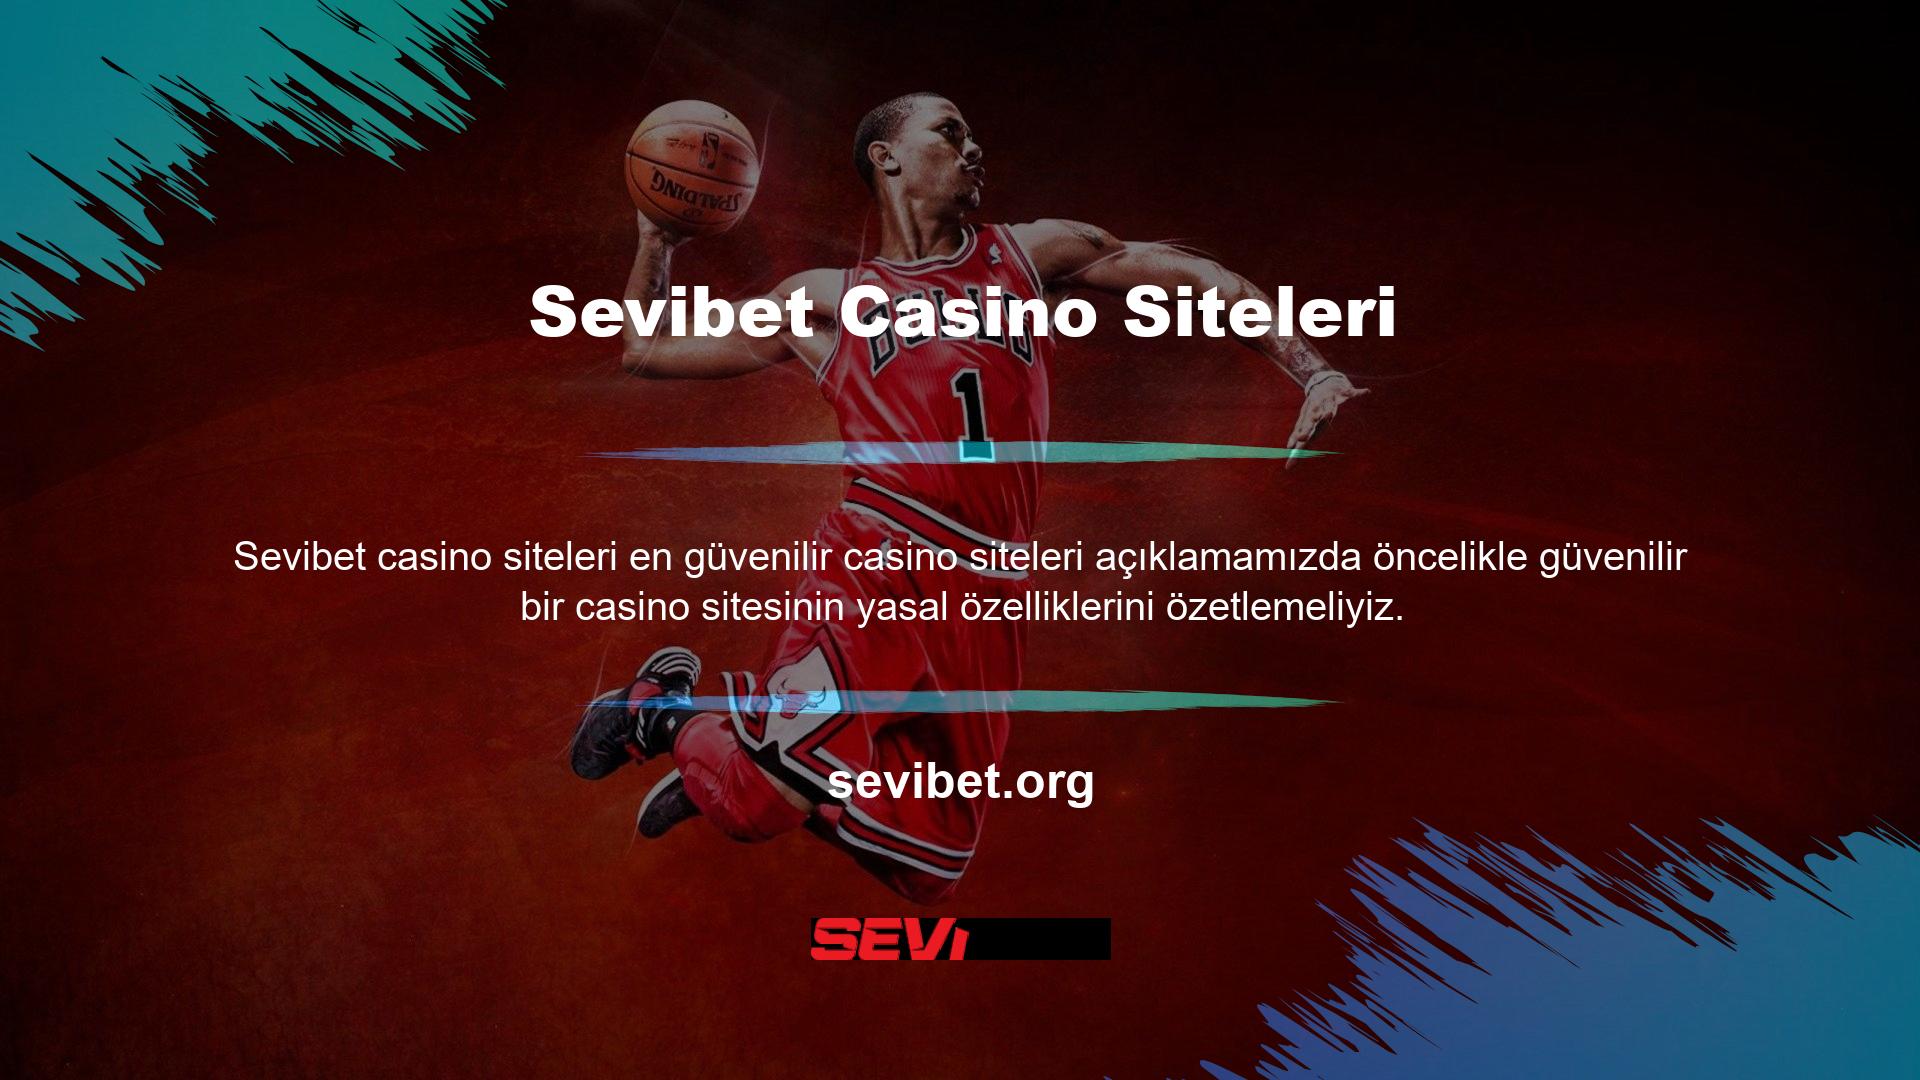 Sevibet Casino web sitesinde bir hesap açmak, para yatırmak veya oyun oynamak istiyorsanız, lütfen önce şirket bilgilerini kontrol edin